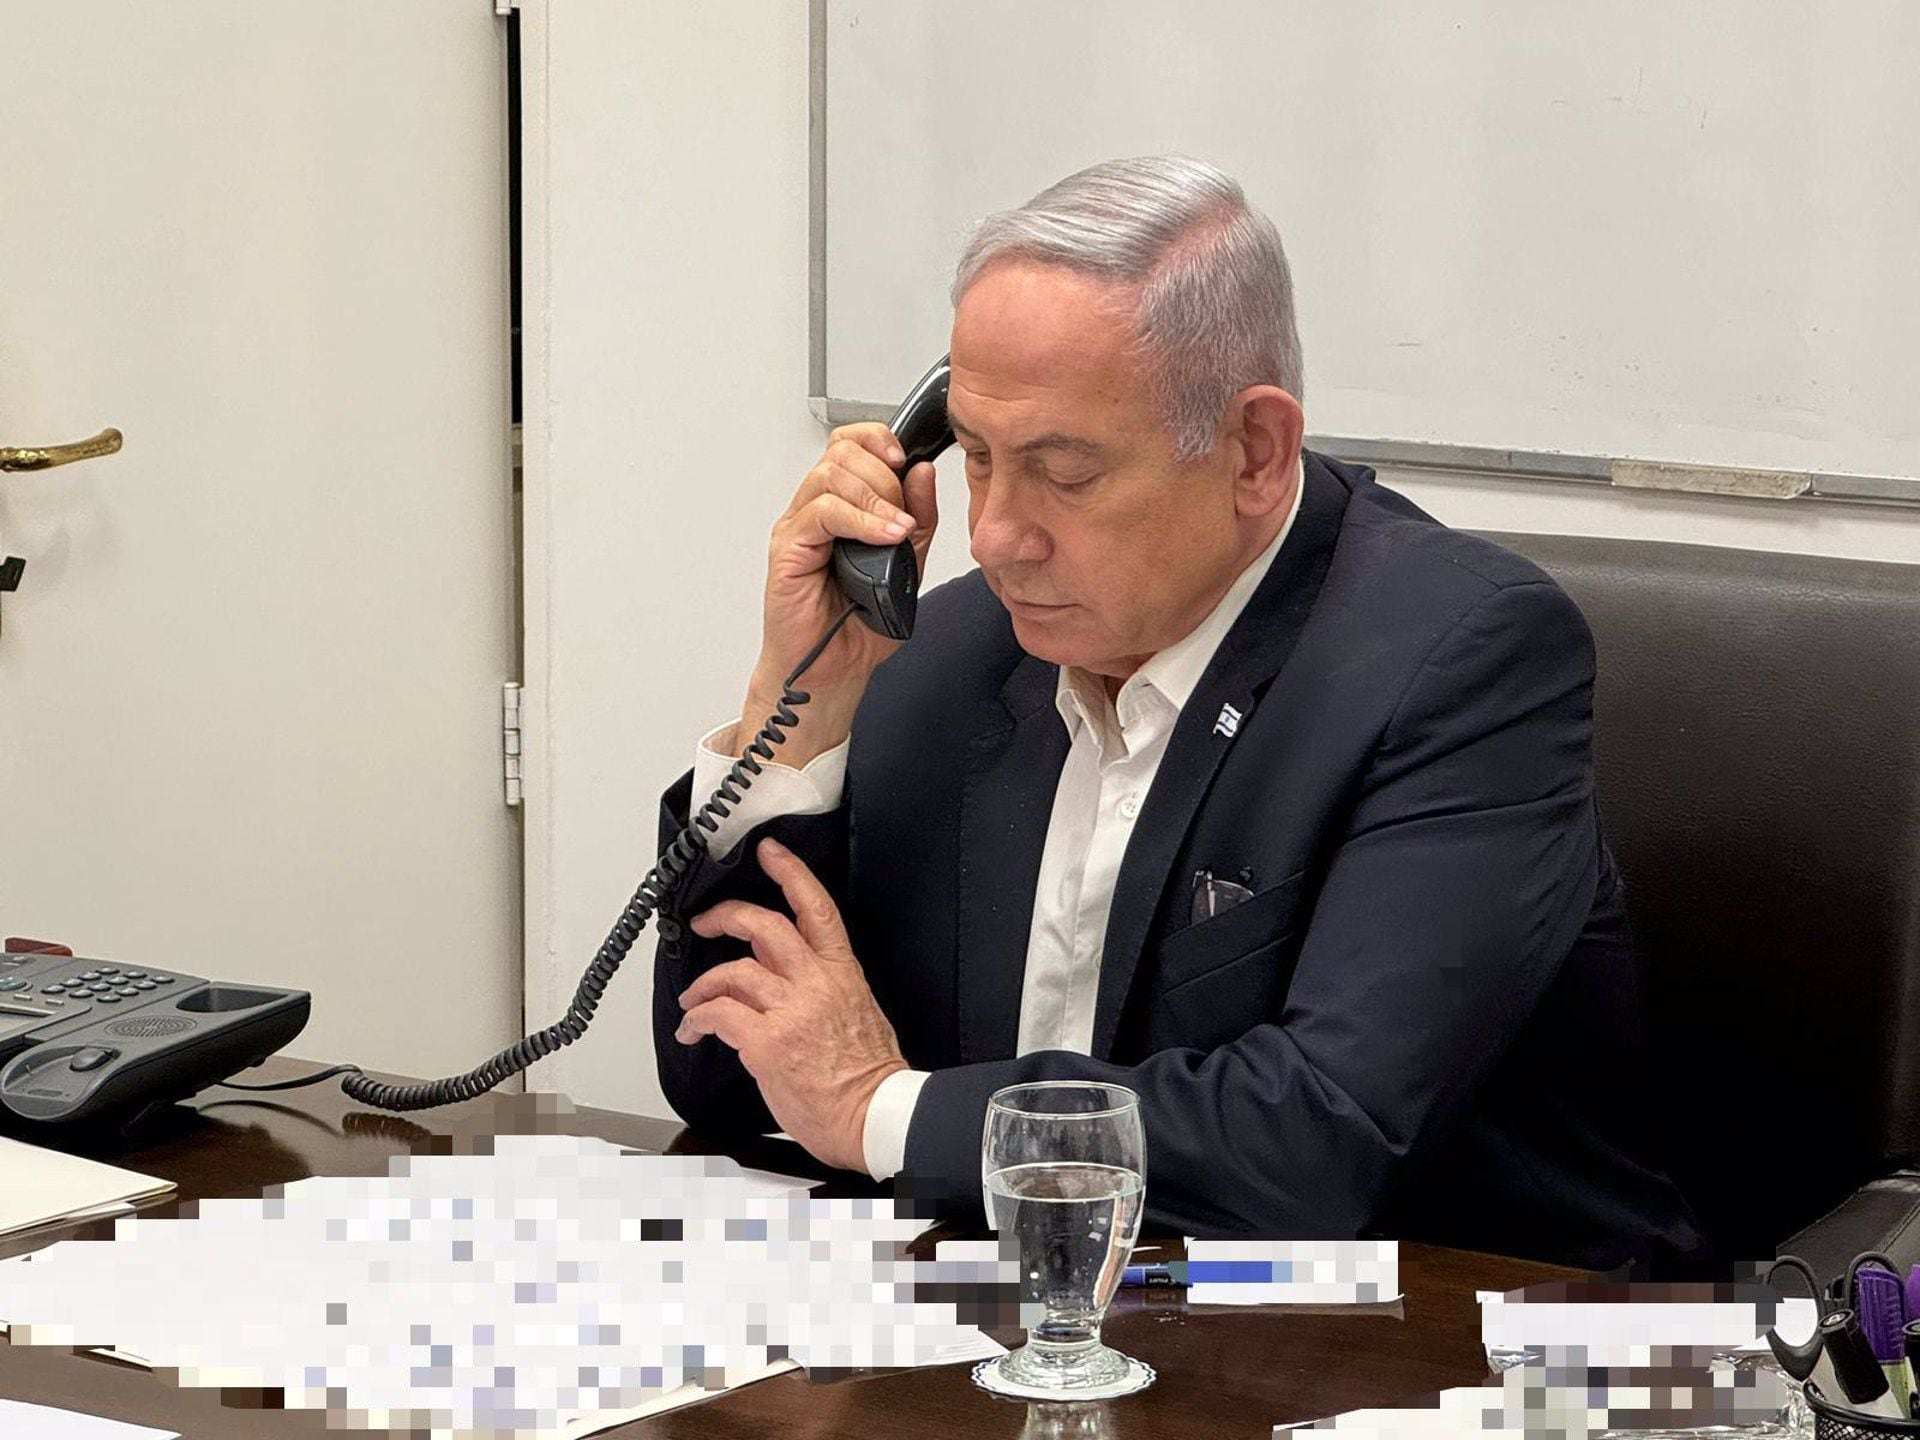 Netanyahu apela a la unidad en medio de la “amenaza total” de Irán: “Las naciones se quiebran desde dentro”